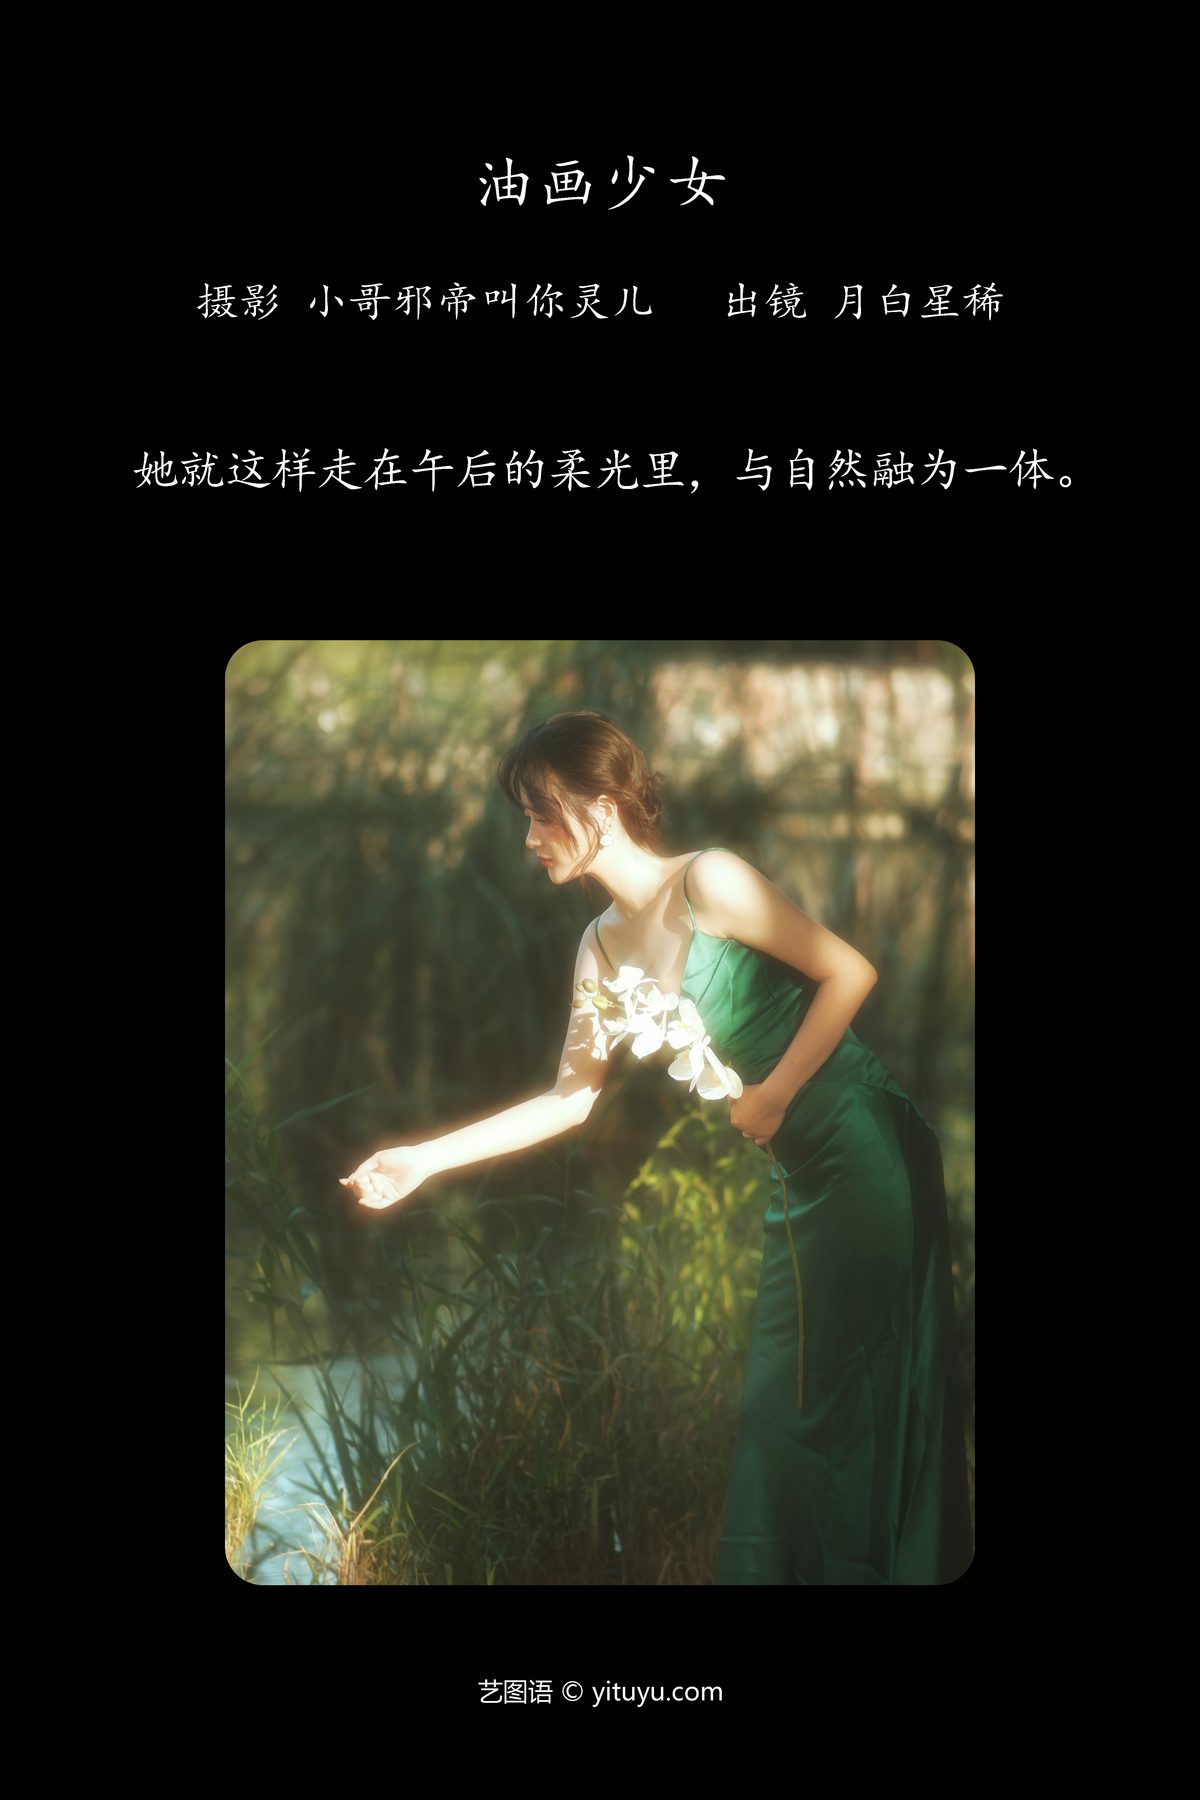 YiTuYu艺图语 Vol 5483 Yue Bai Xing Xi 0002 7835868283.jpg